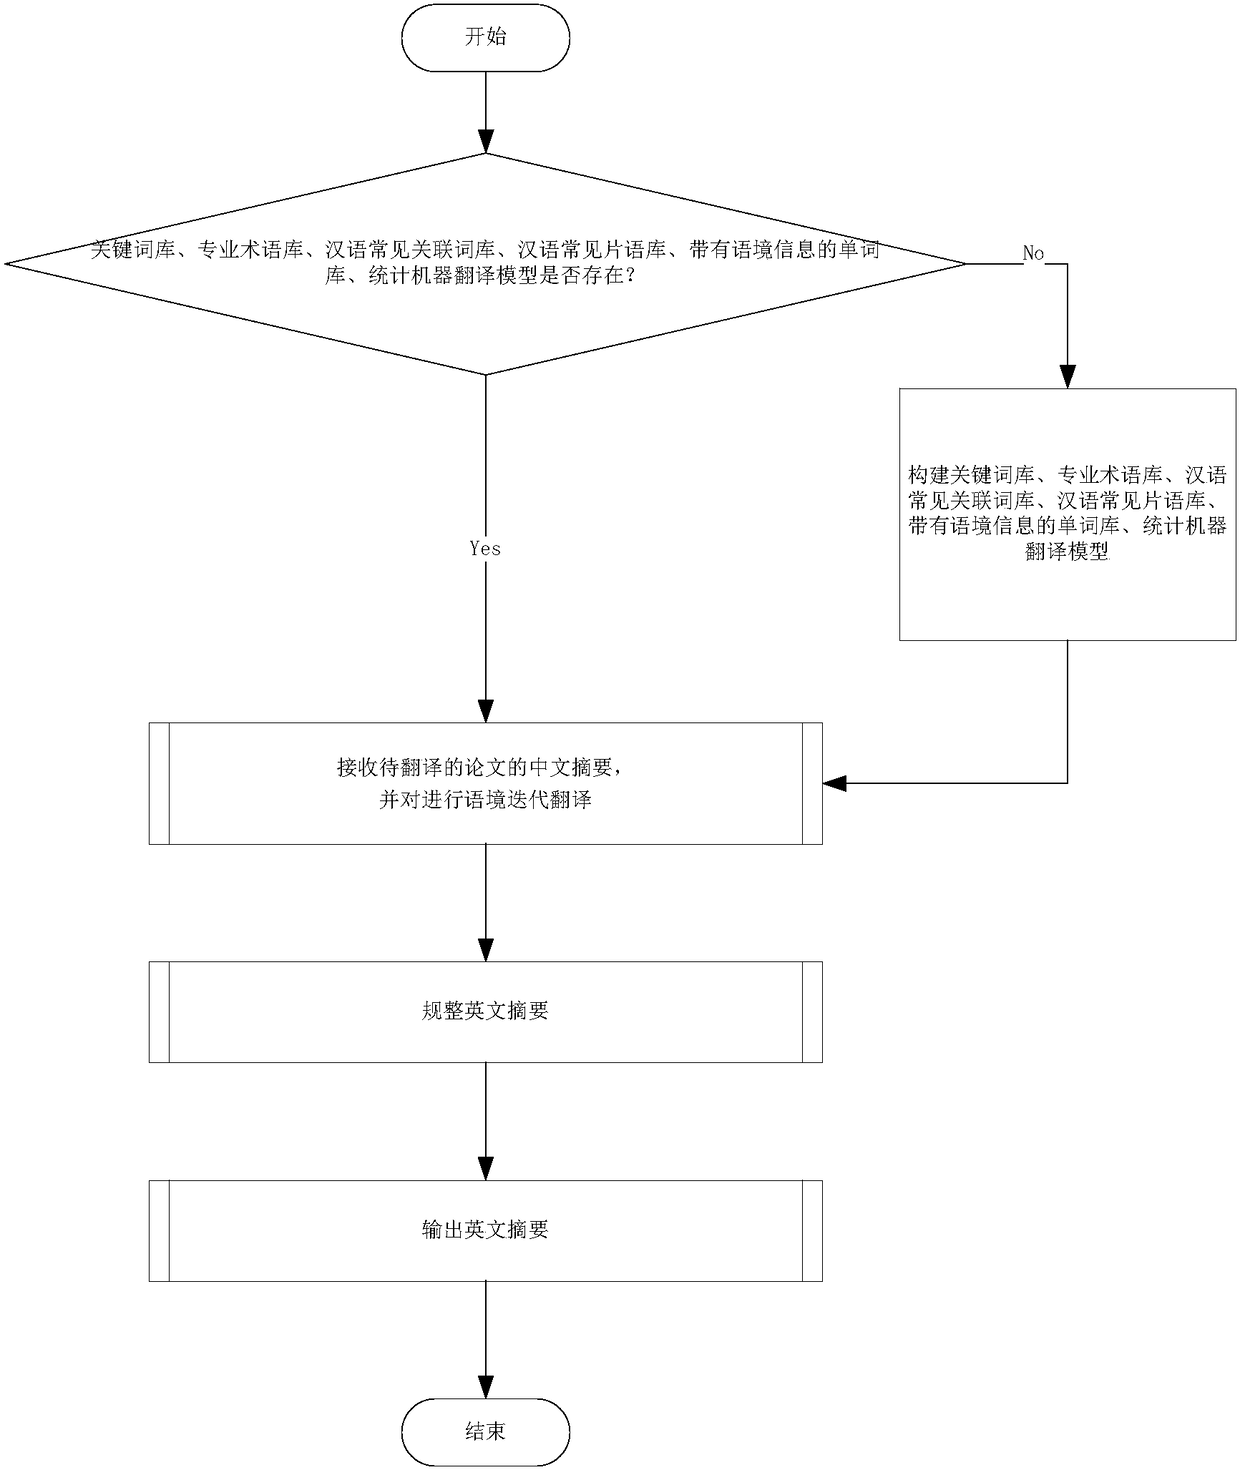 Chinese-English machine translation method based on context iteration analysis